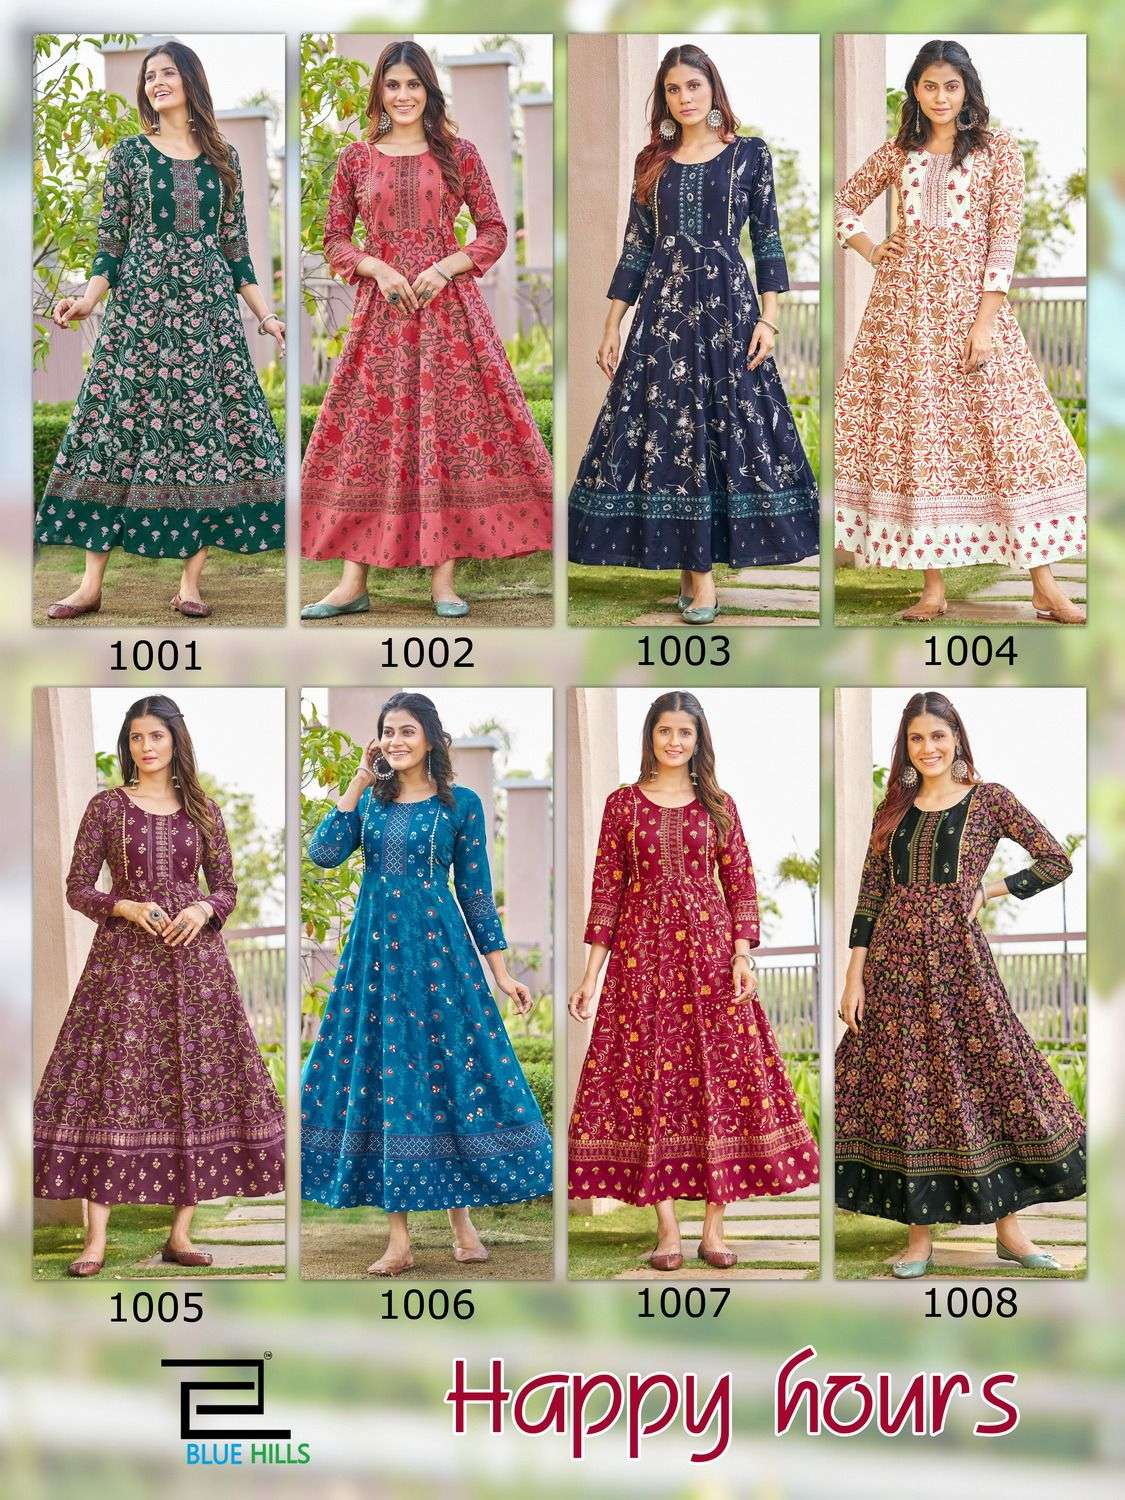 bluehills happy hours 1001-1008 series designer floor length gown kurti wholesaler surat